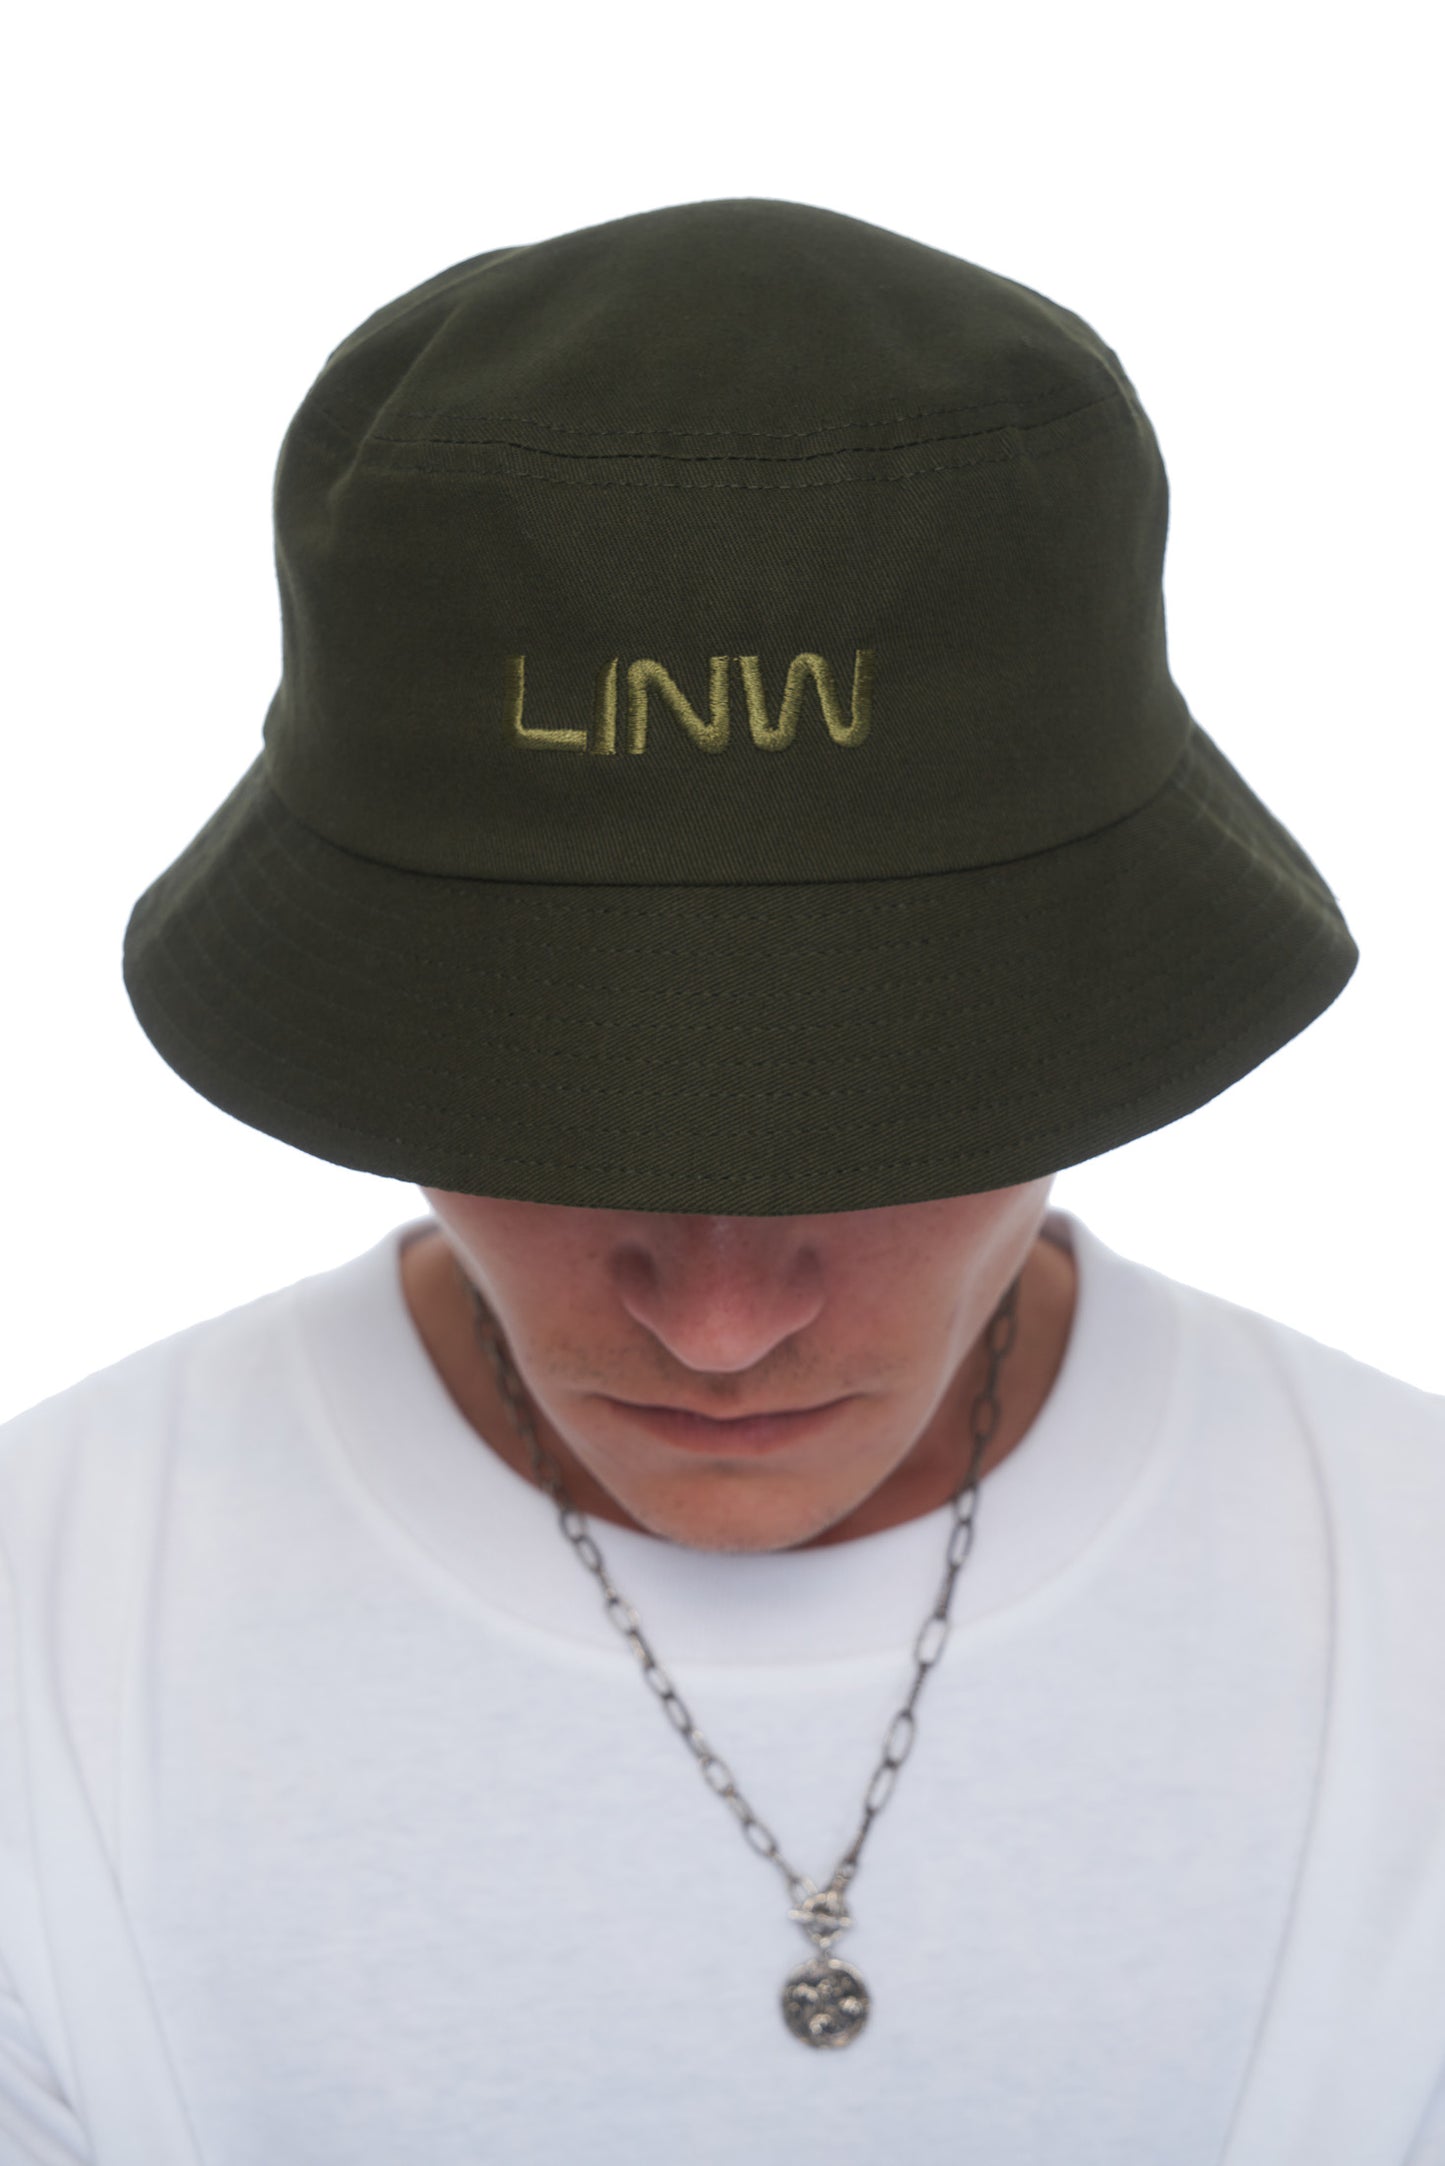 Essential LINW Bucket Hat - Army Green